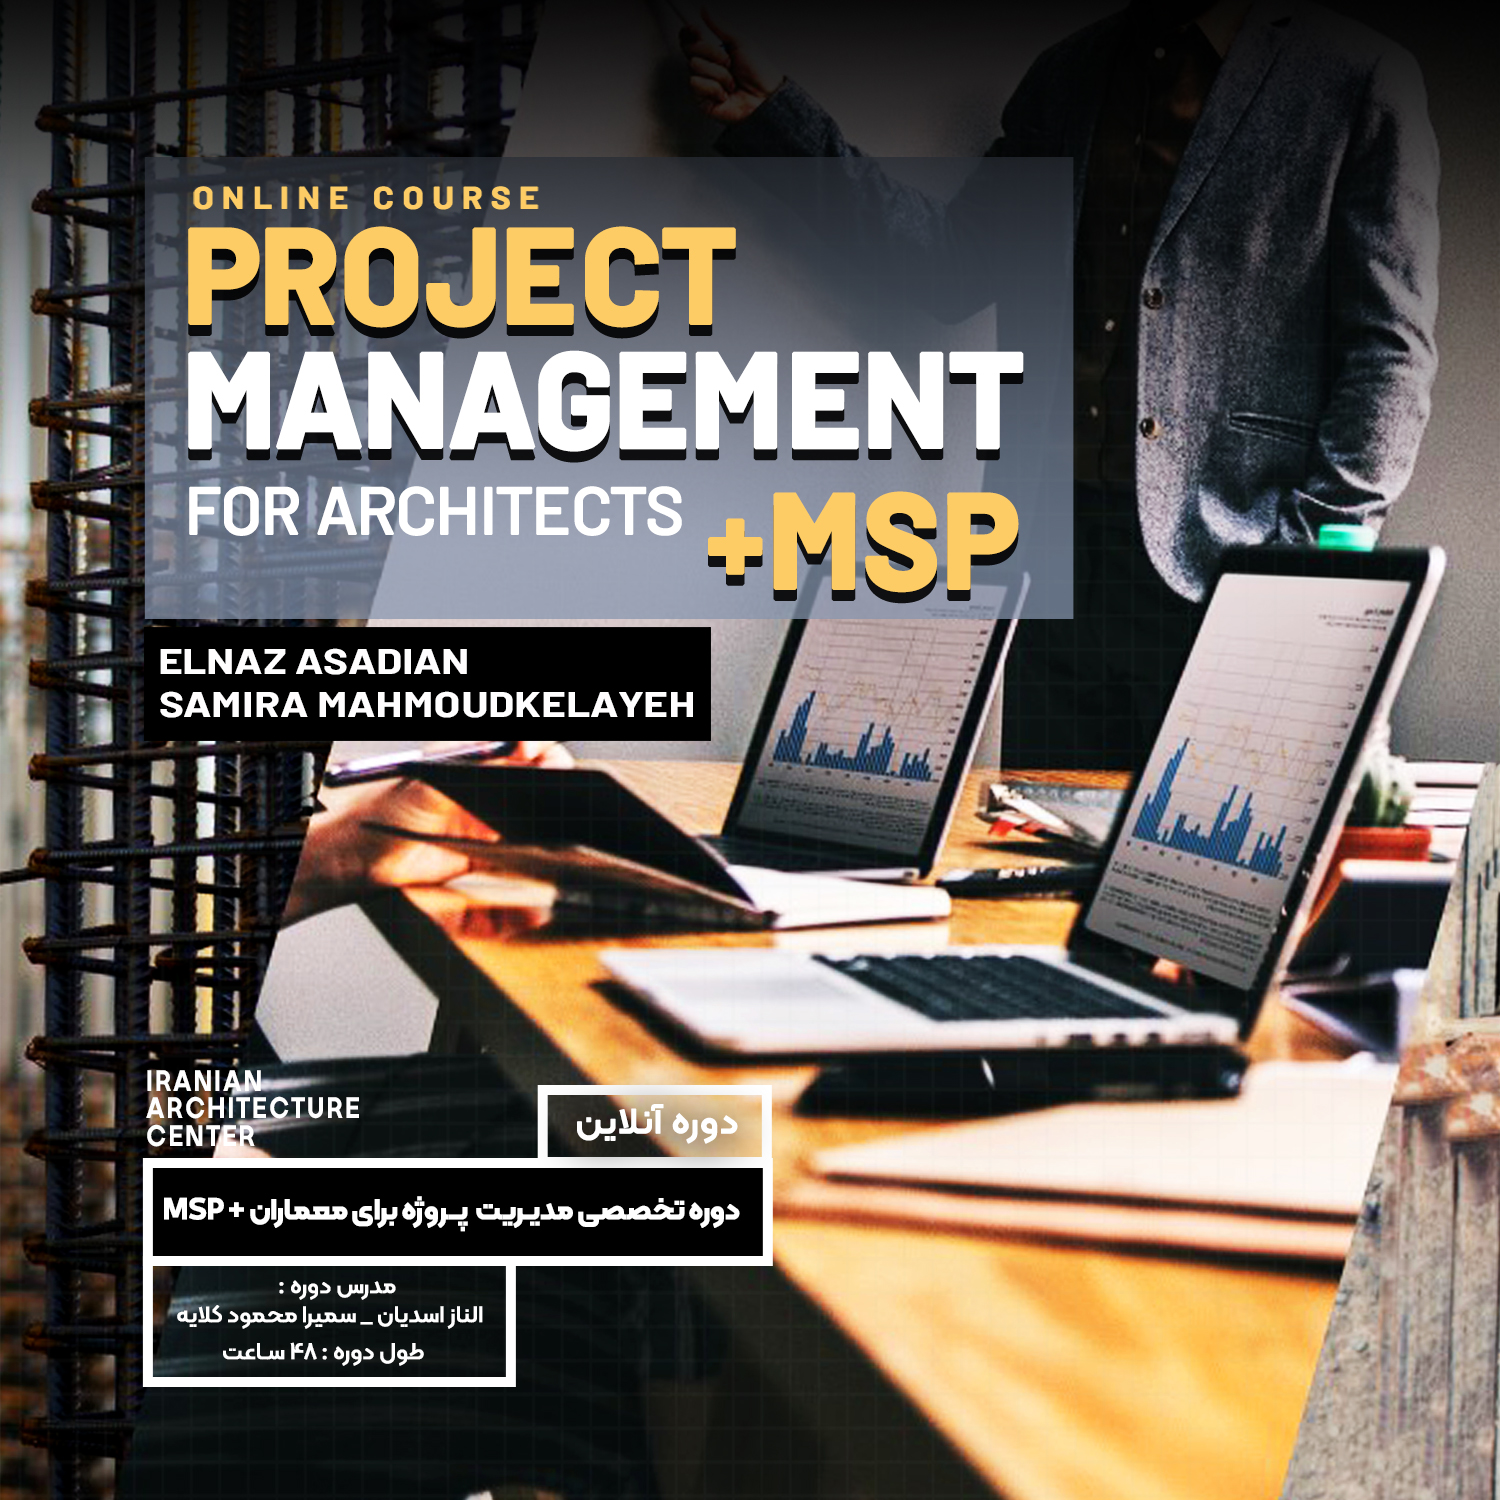 مدیریت پروژه برای معماران و برنامه MSP